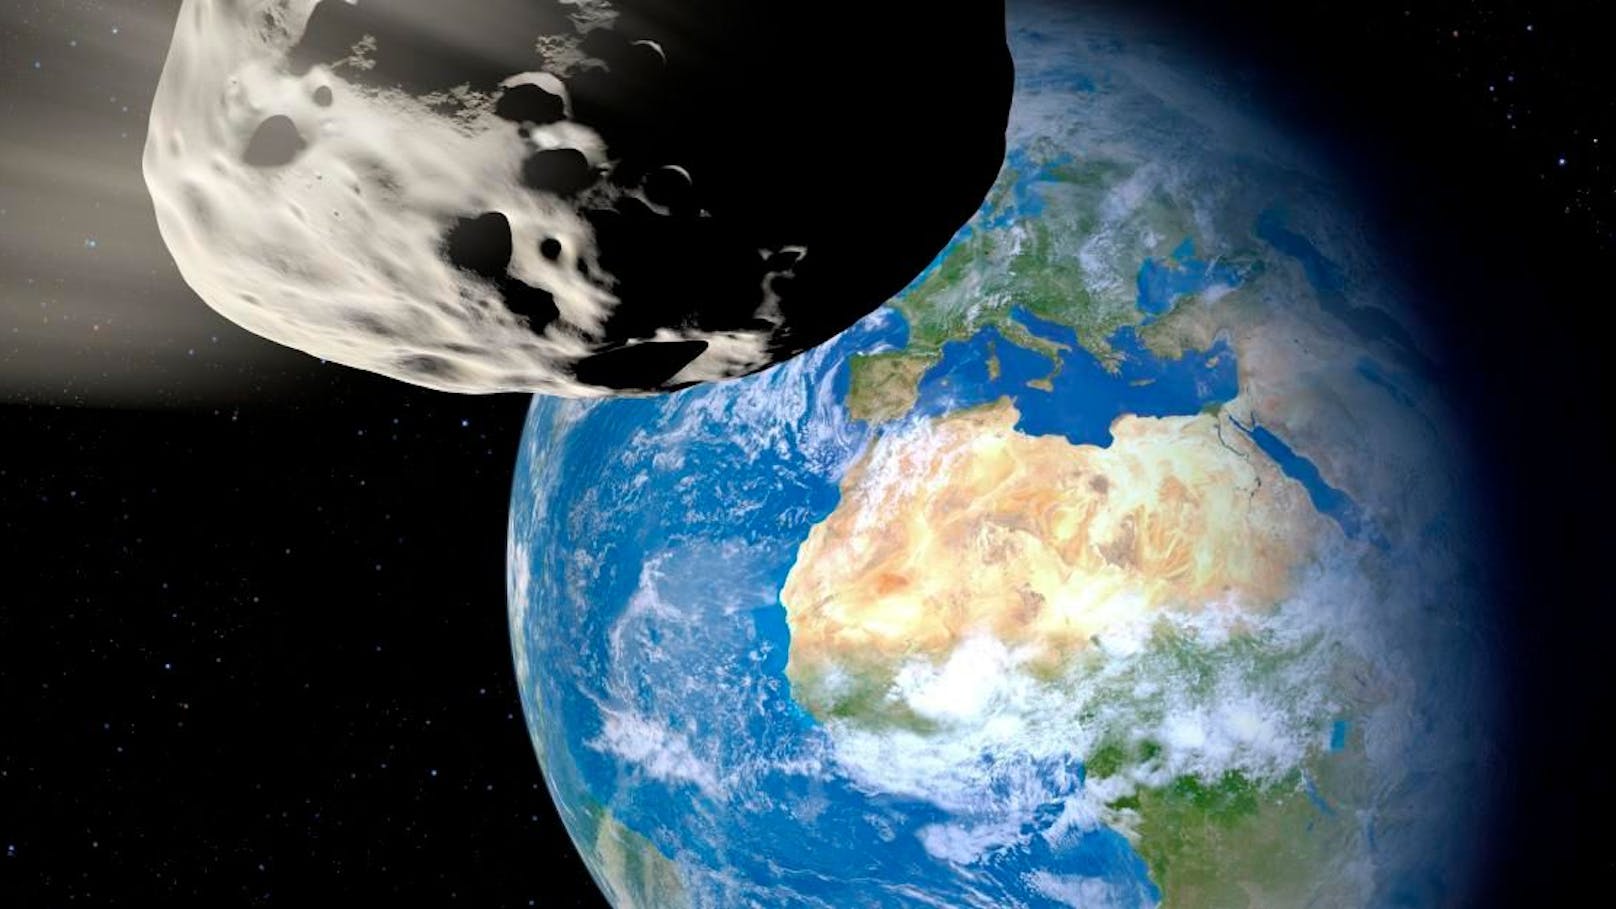 Der Asteroid "Bennu" trägt den Spitznamen "Weltuntergangs-Asteroid".